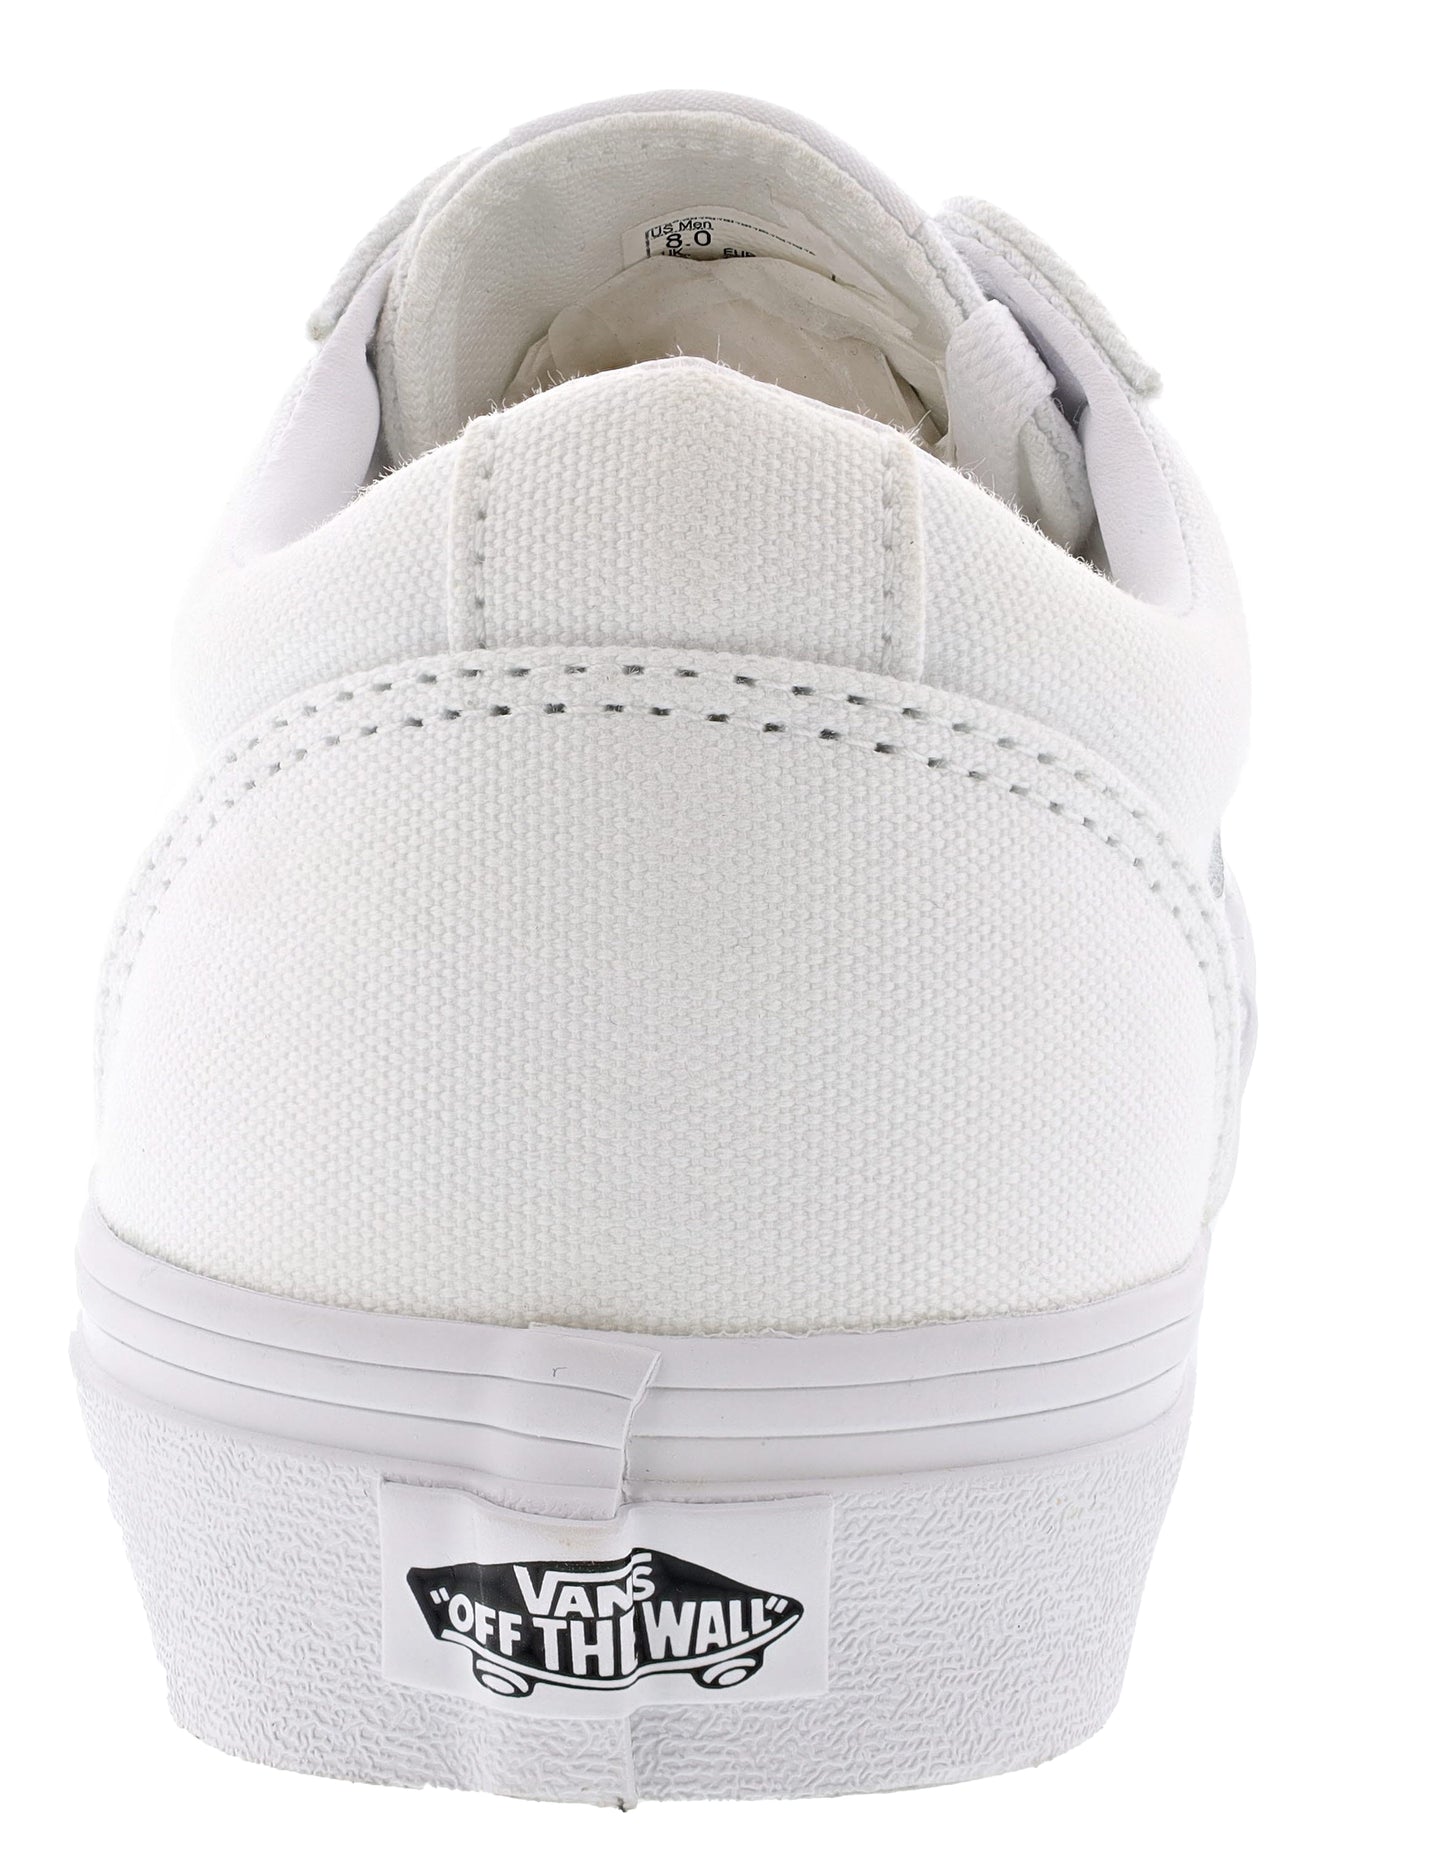 
                  
                    Vans Men's Ward Low Vulcanized Rubber Skate Shoes
                  
                